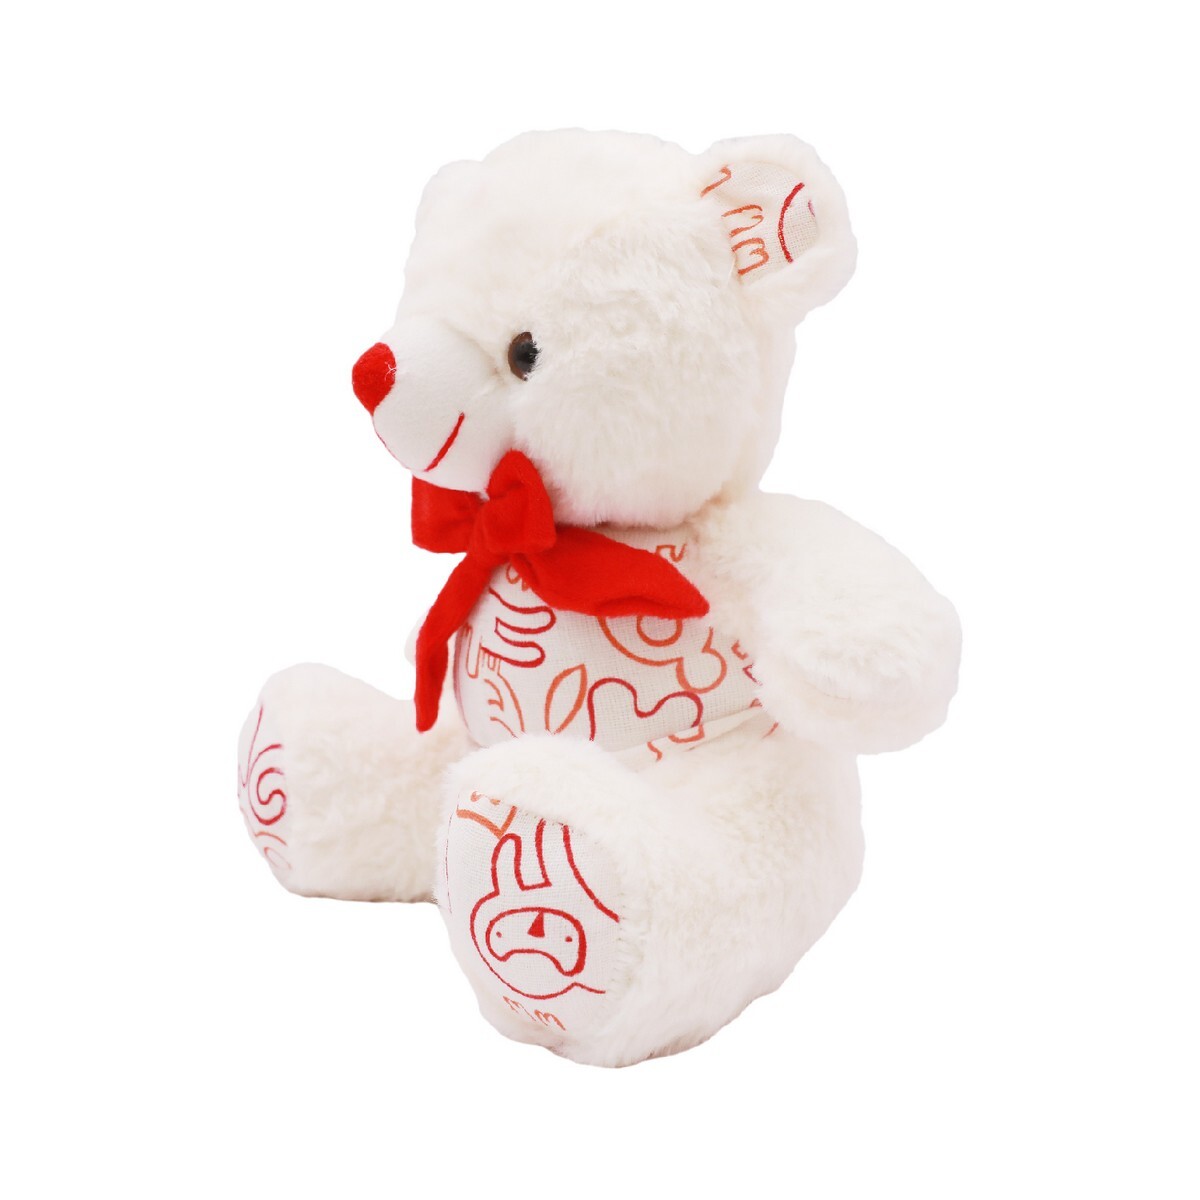 Zaal Teddy Bear Plush-7791 Assorted Colour & Design